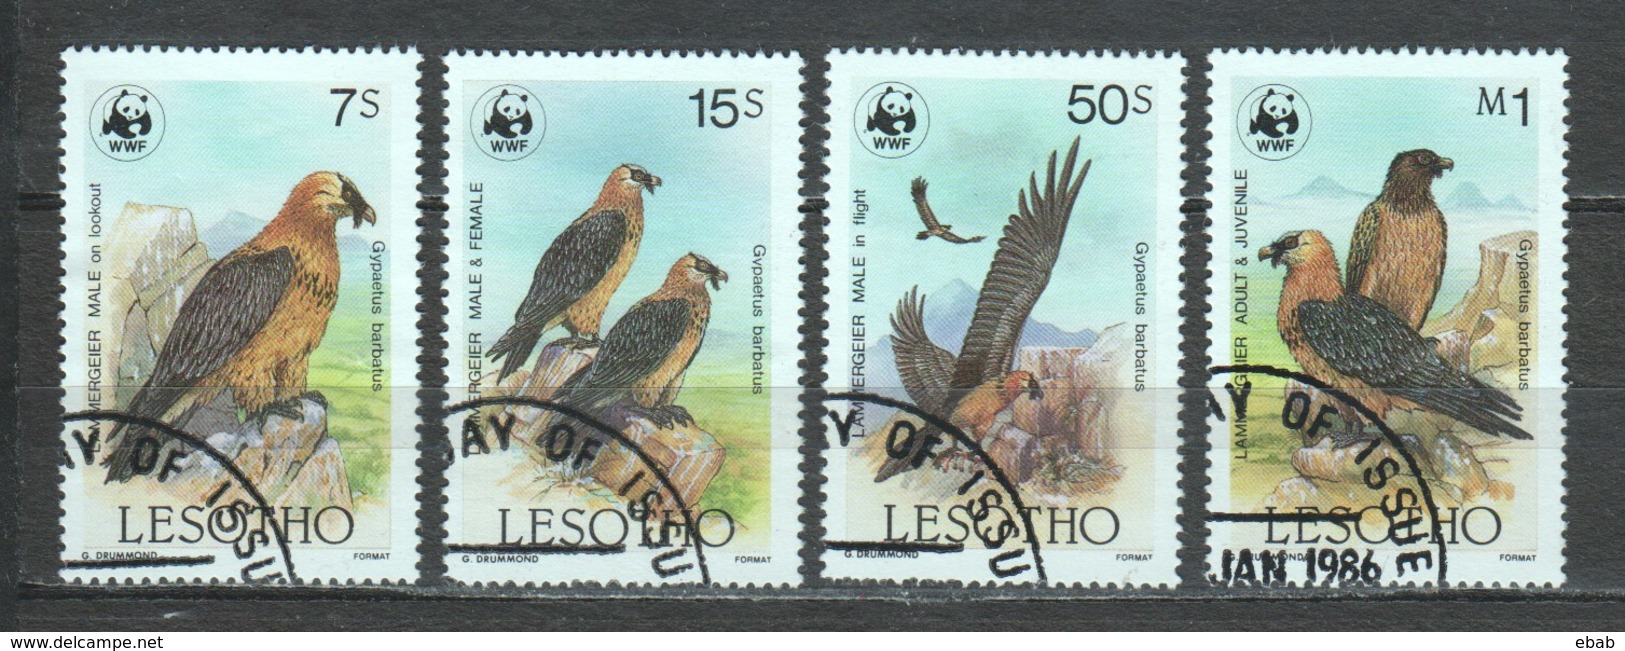 Lesotho 1986 Mi 556-559 WWF BIRDS OF PREY - Usados